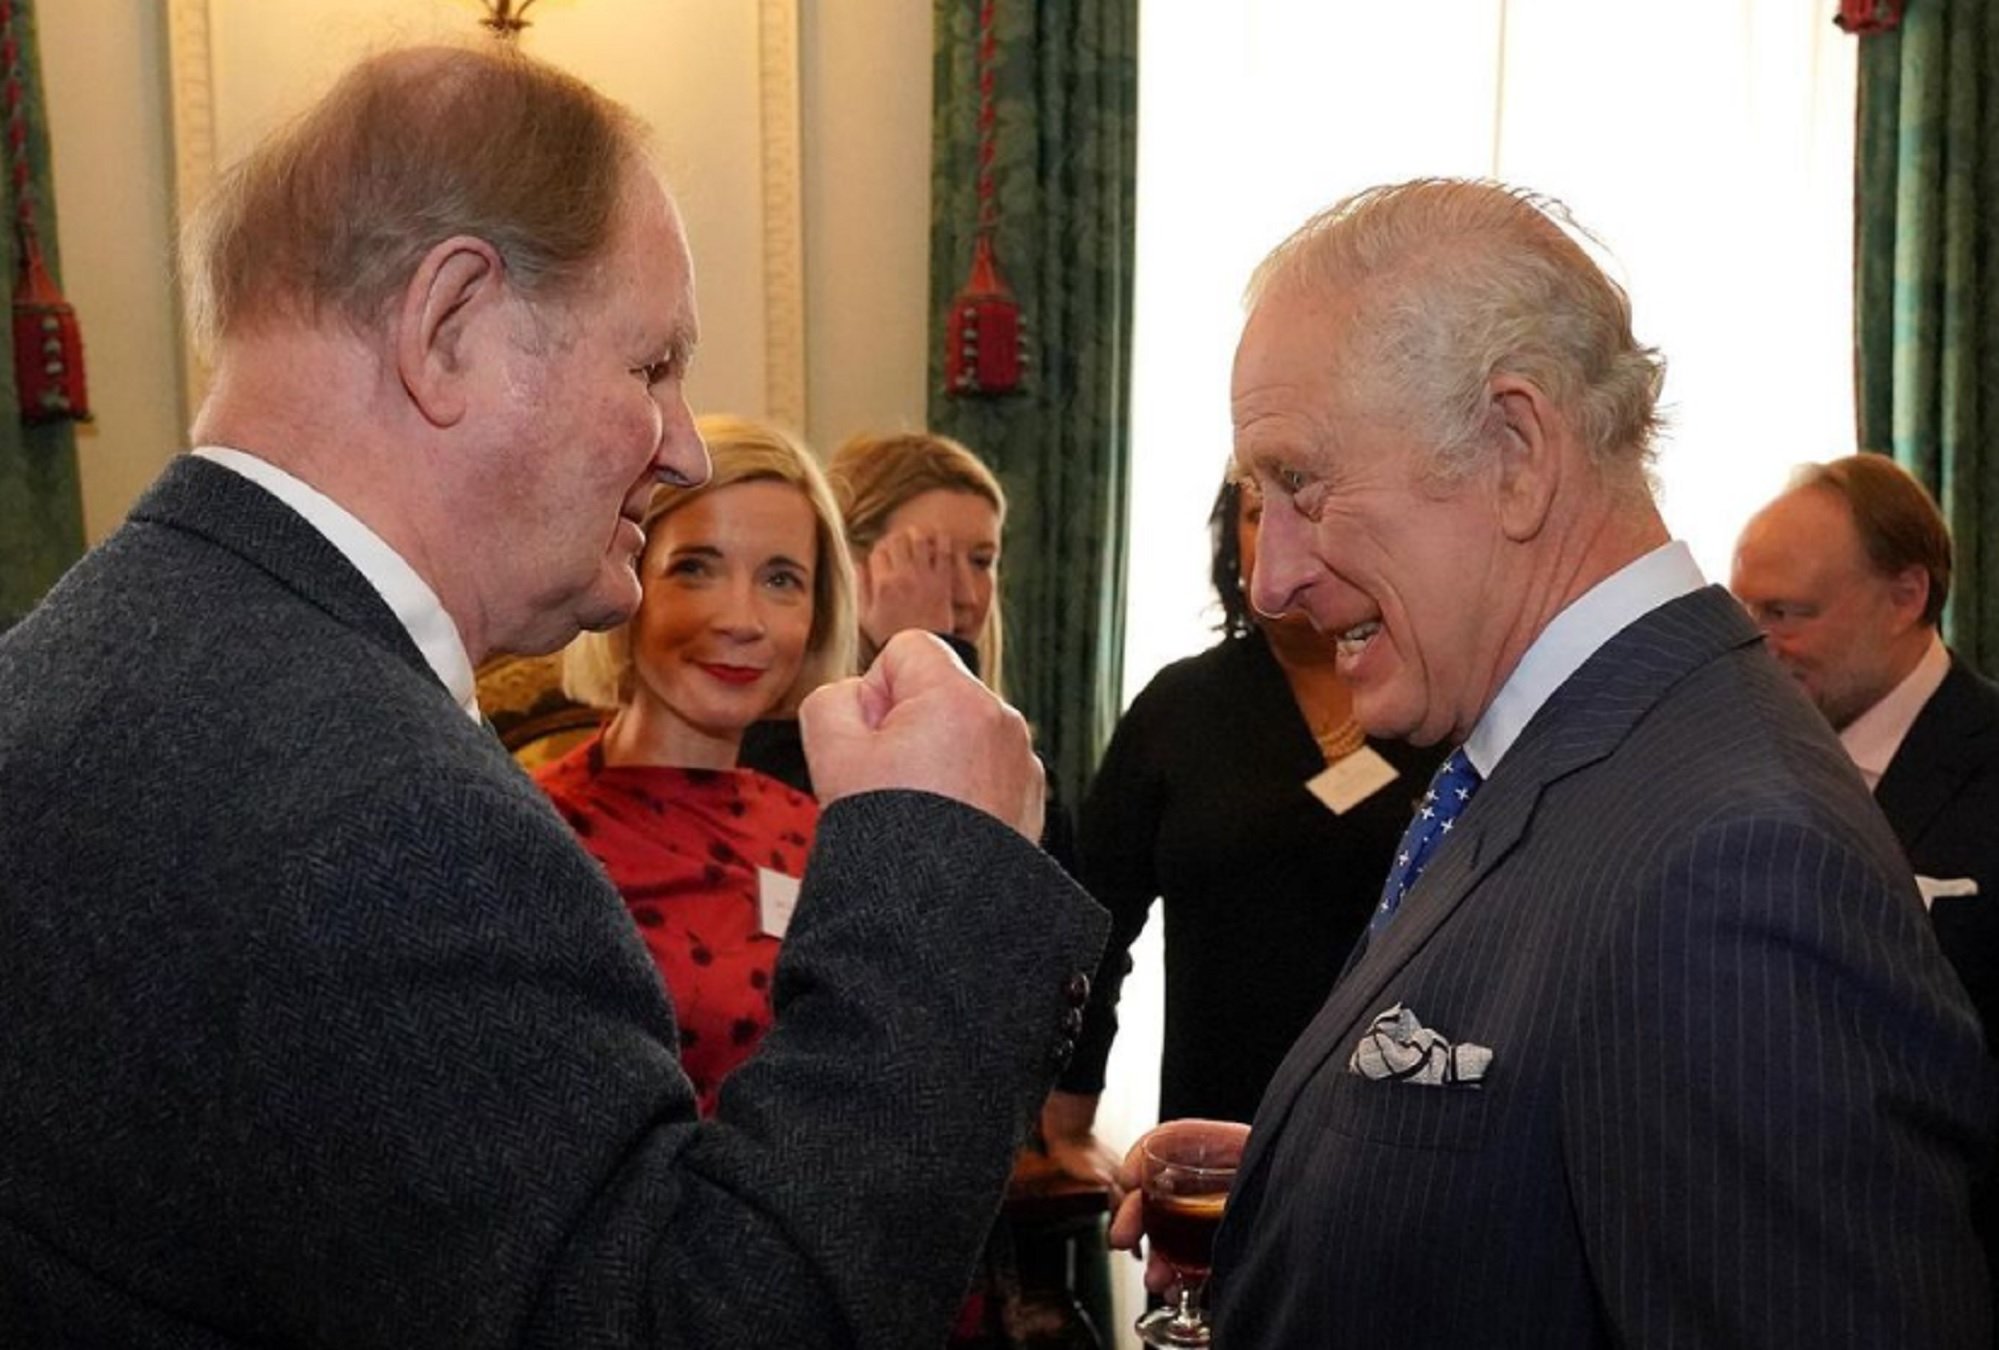 Carles III veta 3 membres de la família, no seran a la desfilada en carruatge el dia de la coronació